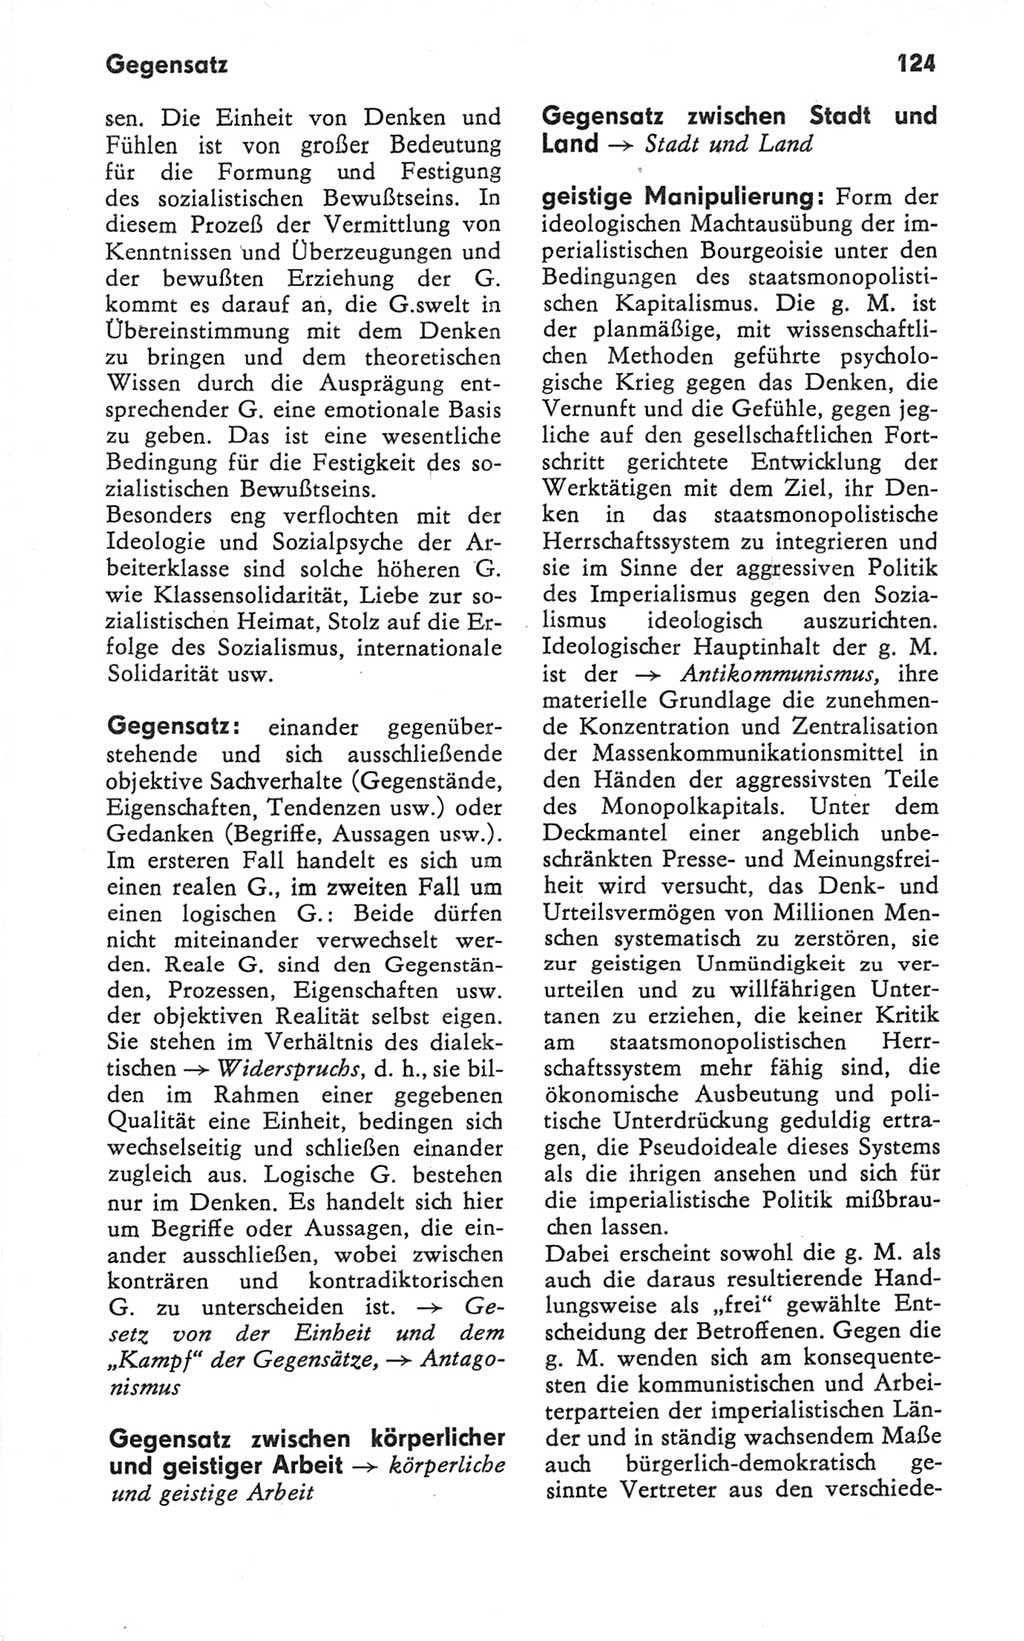 Kleines Wörterbuch der marxistisch-leninistischen Philosophie [Deutsche Demokratische Republik (DDR)] 1979, Seite 124 (Kl. Wb. ML Phil. DDR 1979, S. 124)